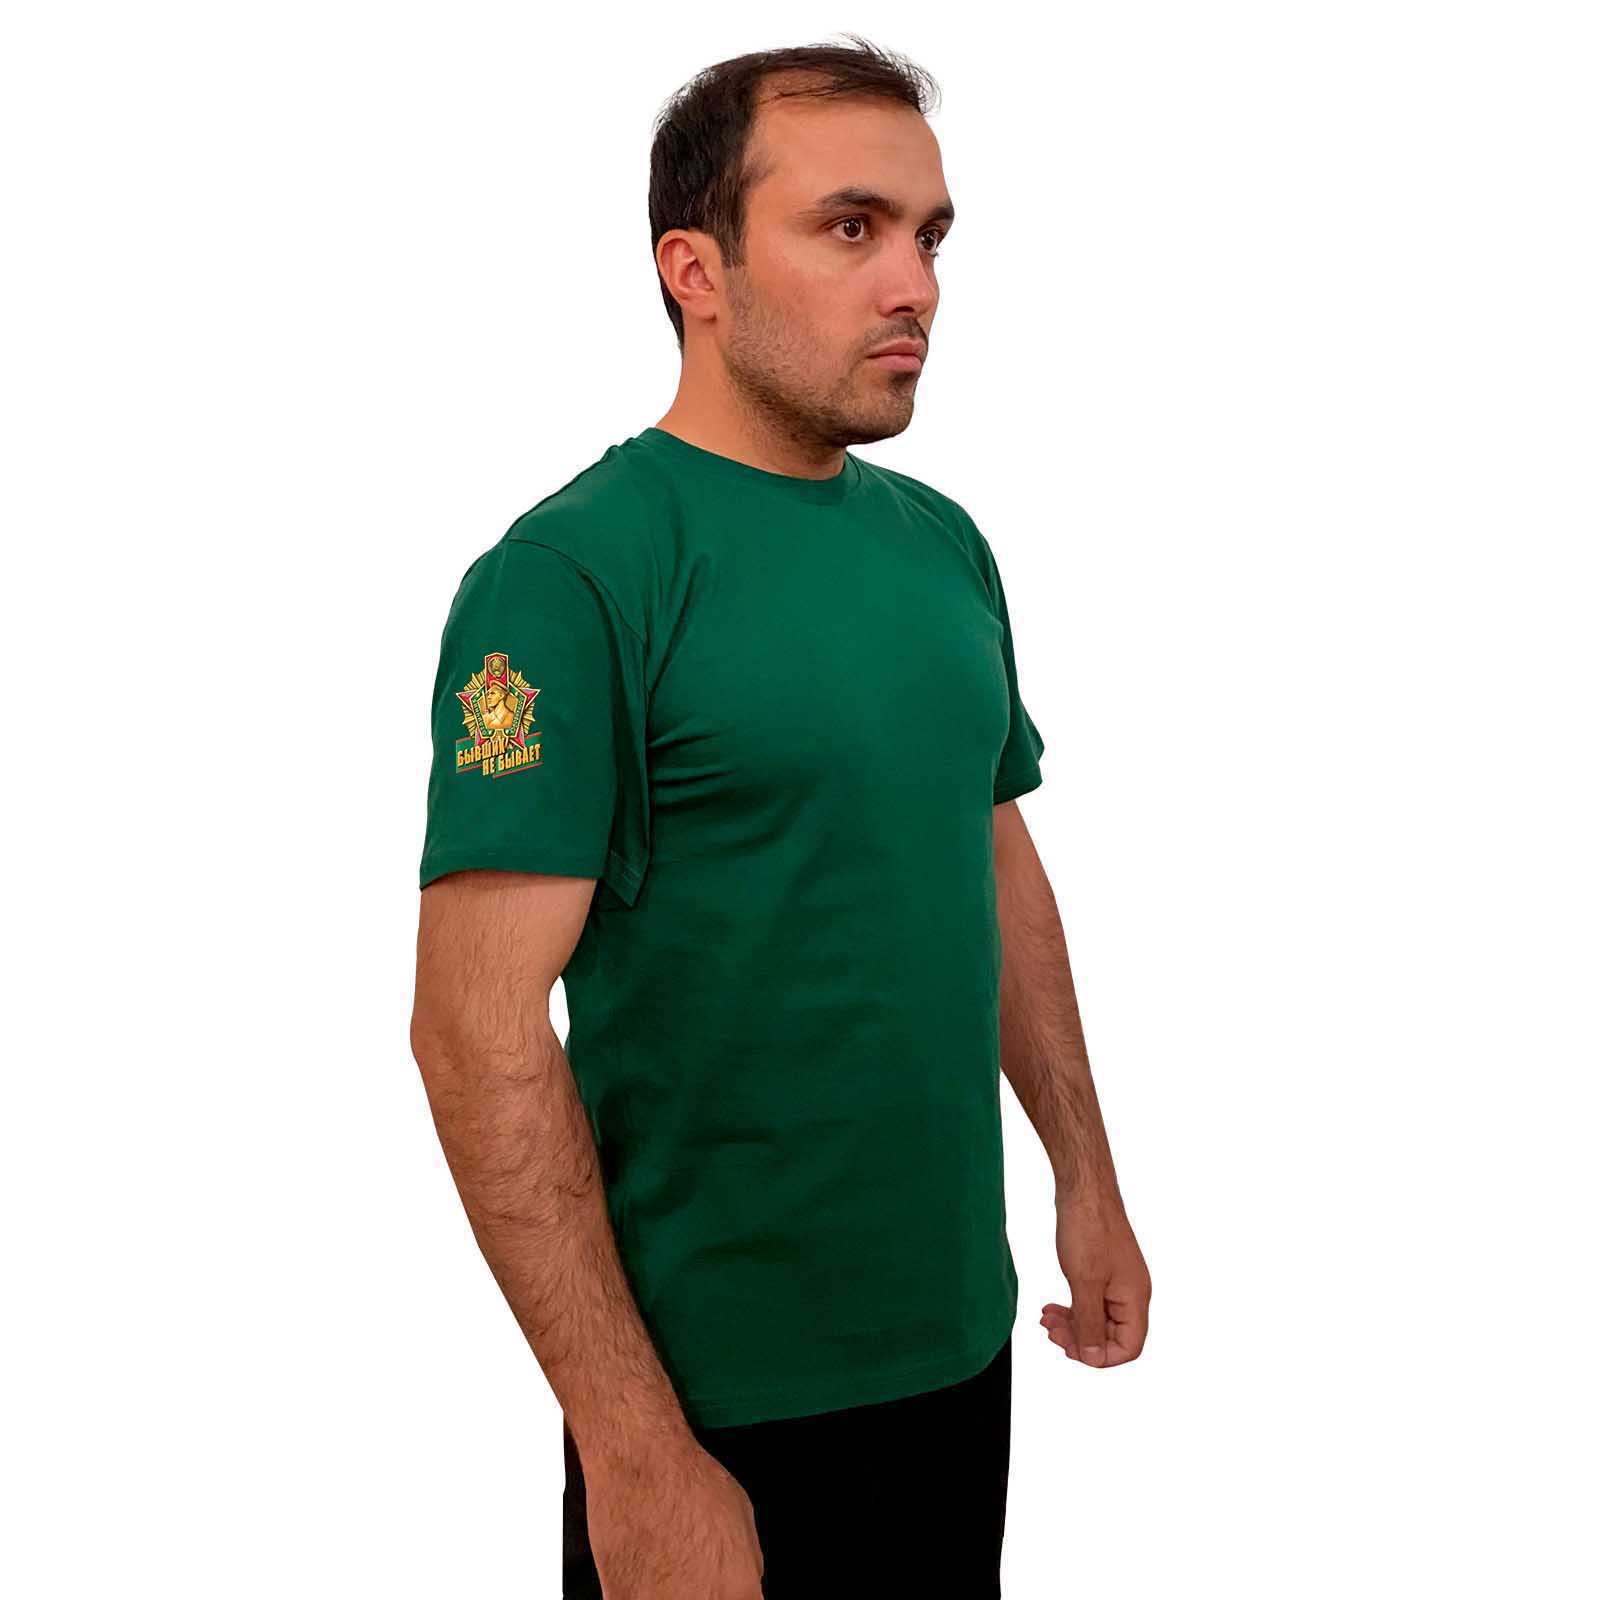 Зелёная футболка с трансфером "Бывших пограничников не бывает" на рукаве